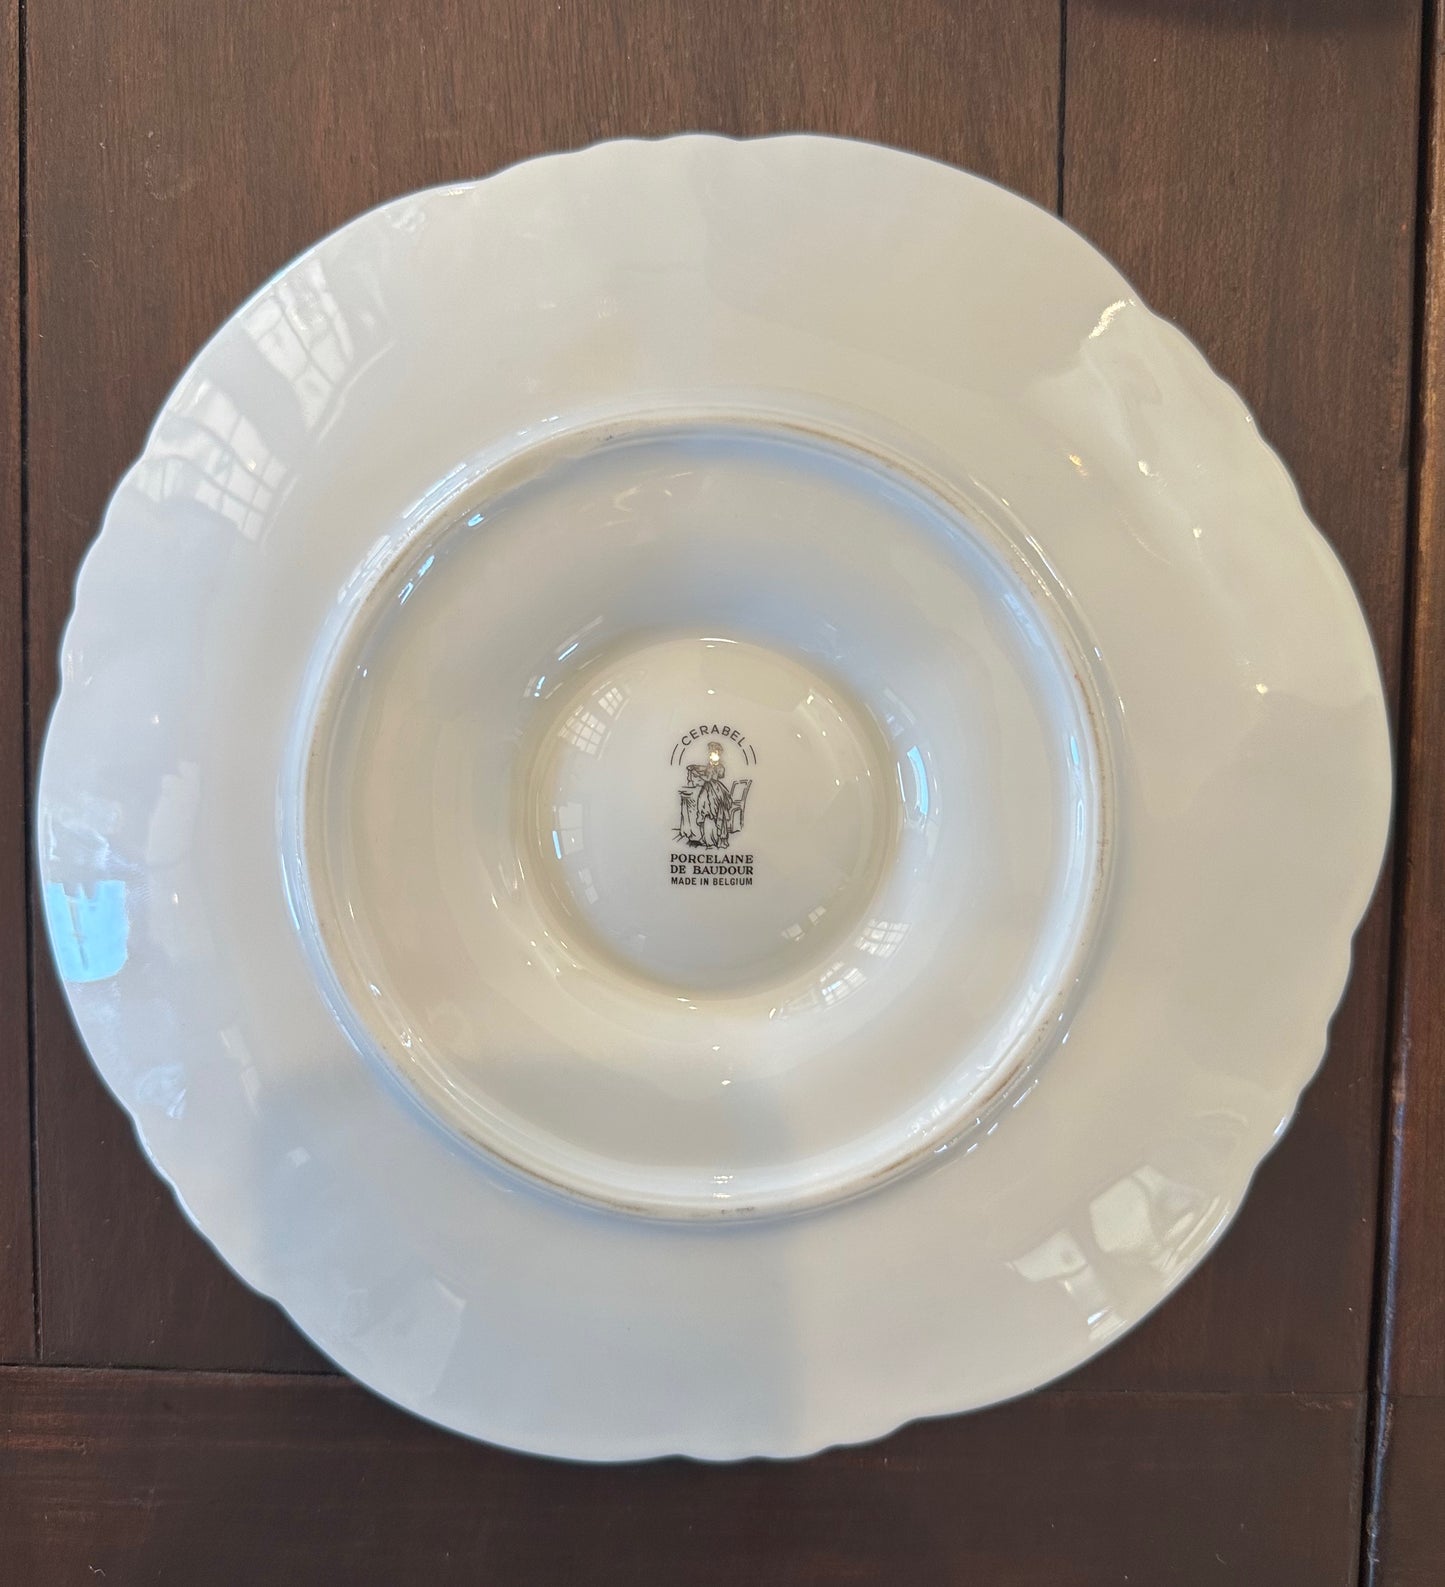 Table Top Vintage Oyster Plate Cerabel Porcelaine De Baudour Vintage 9" with Gold Trim Made in Belgium 1960s-1970s